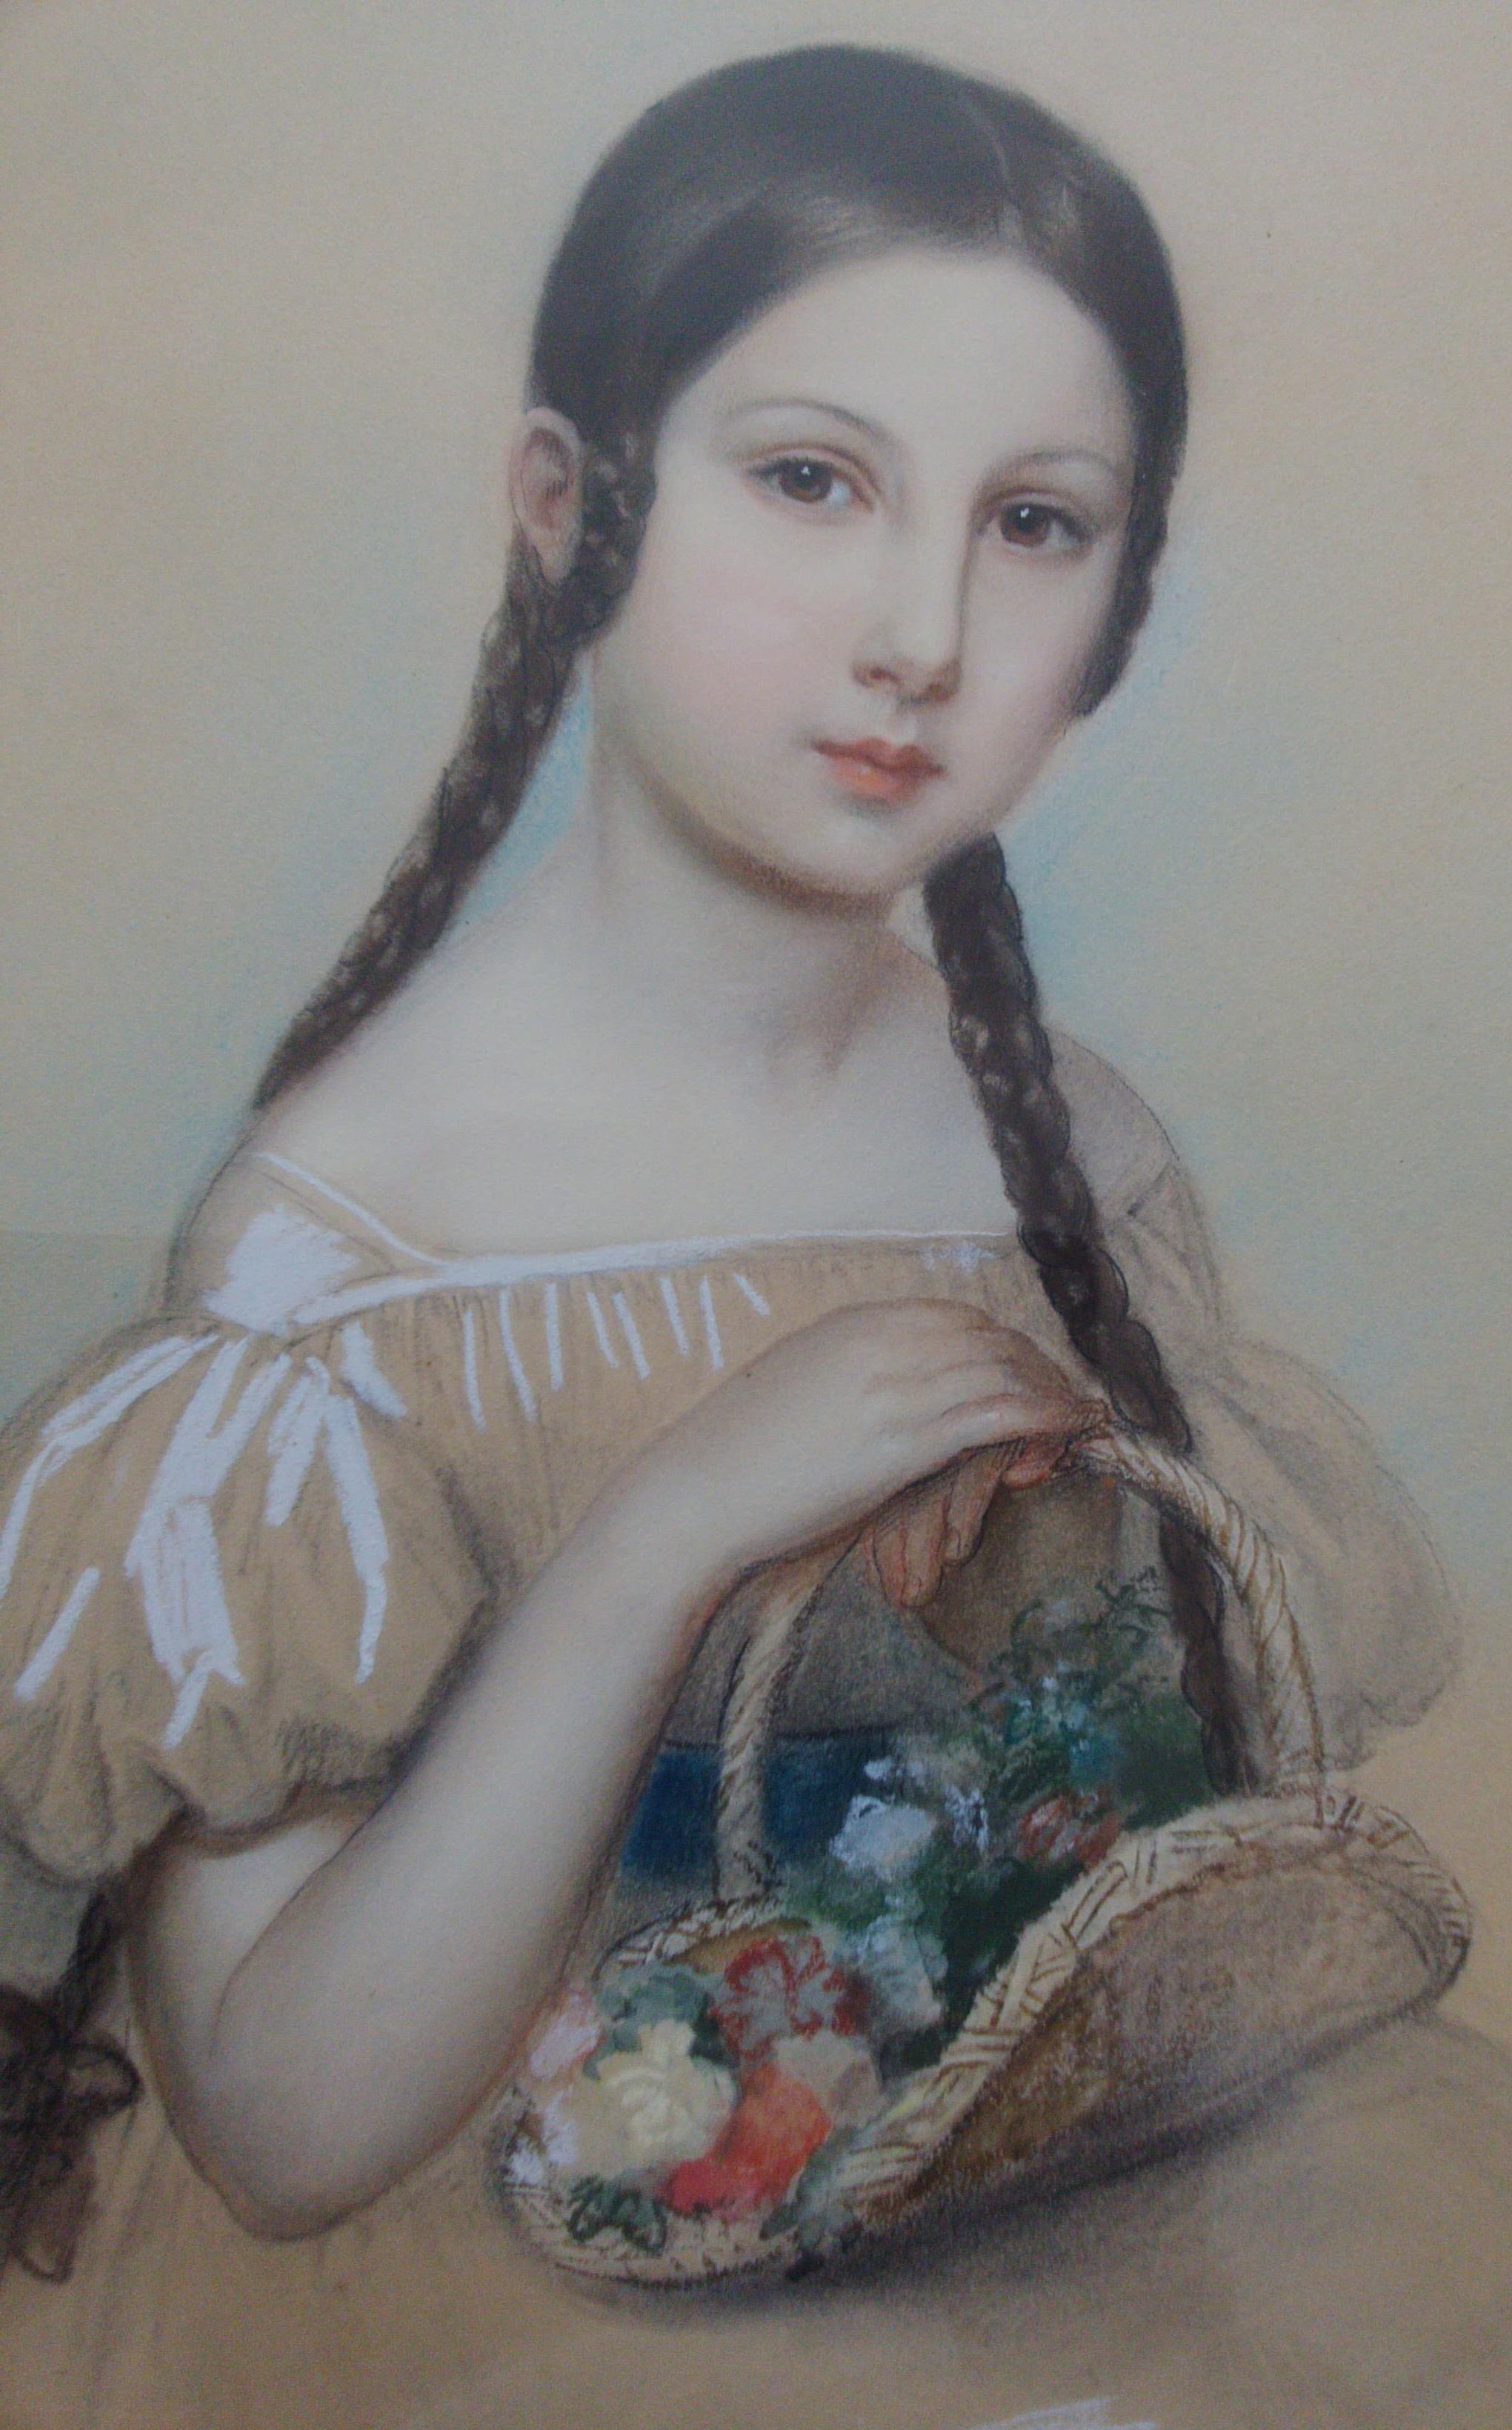 19th Century royal portraitist de Leomenil: Little Girl with Flower Basket - Academic Painting by Laure Houssaye de Leomenil